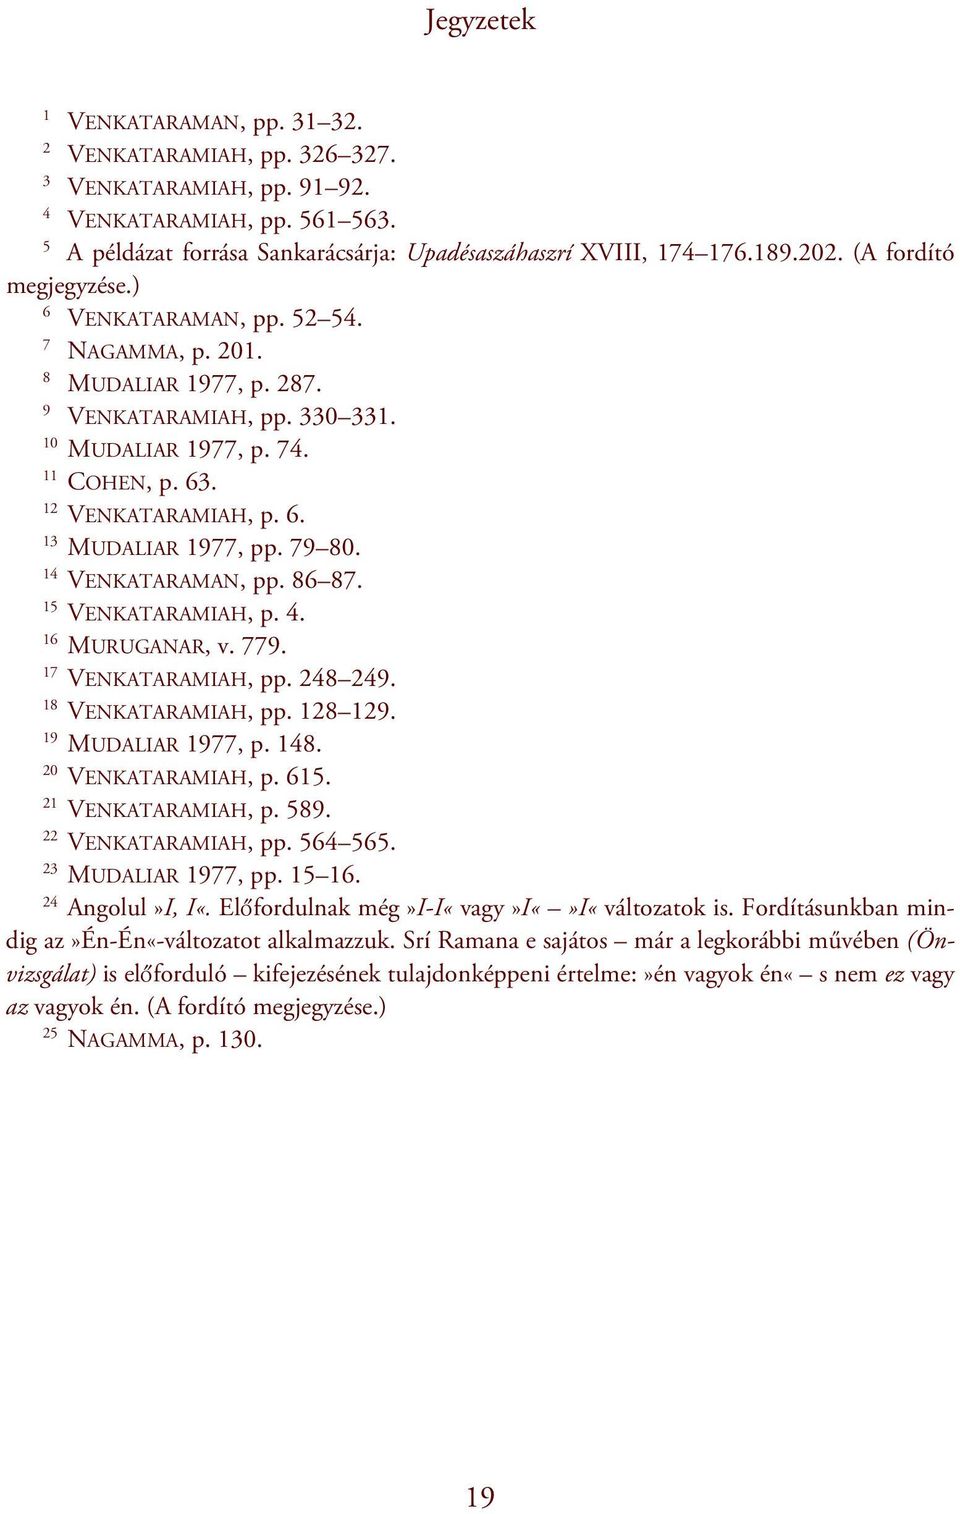 79 80. 14 VENKATARAMAN, pp. 86 87. 15 VENKATARAMIAH, p. 4. 16 MURUGANAR, v. 779. 17 VENKATARAMIAH, pp. 248 249. 18 VENKATARAMIAH, pp. 128 129. 19 MUDALIAR 1977, p. 148. 20 VENKATARAMIAH, p. 615.